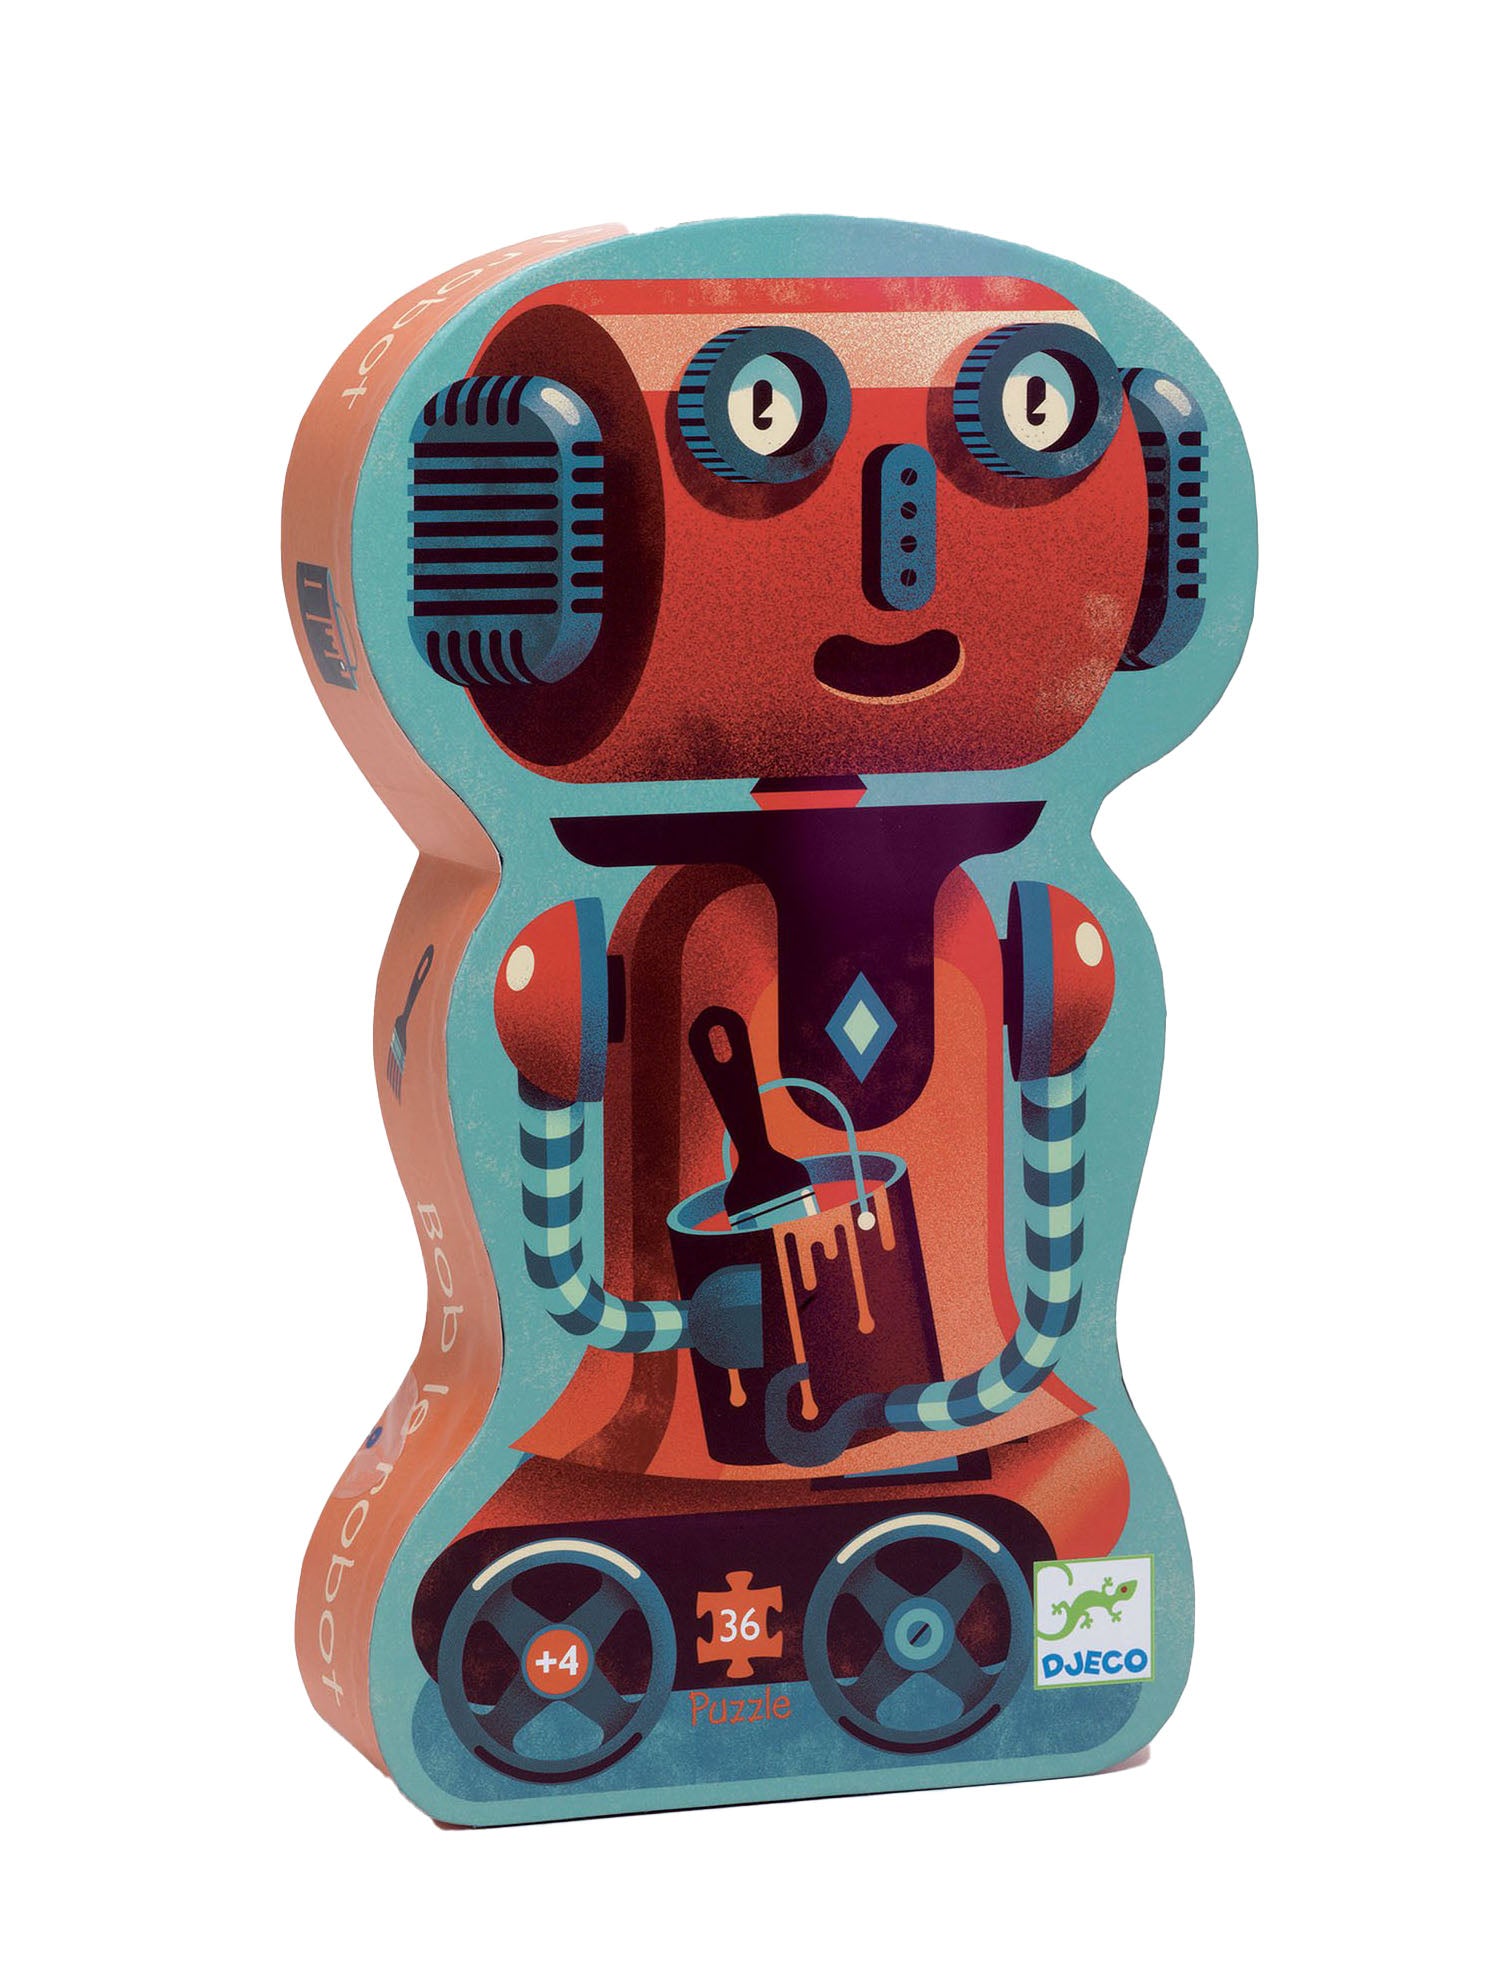 Bob the Robot puzzle, 36 pieces